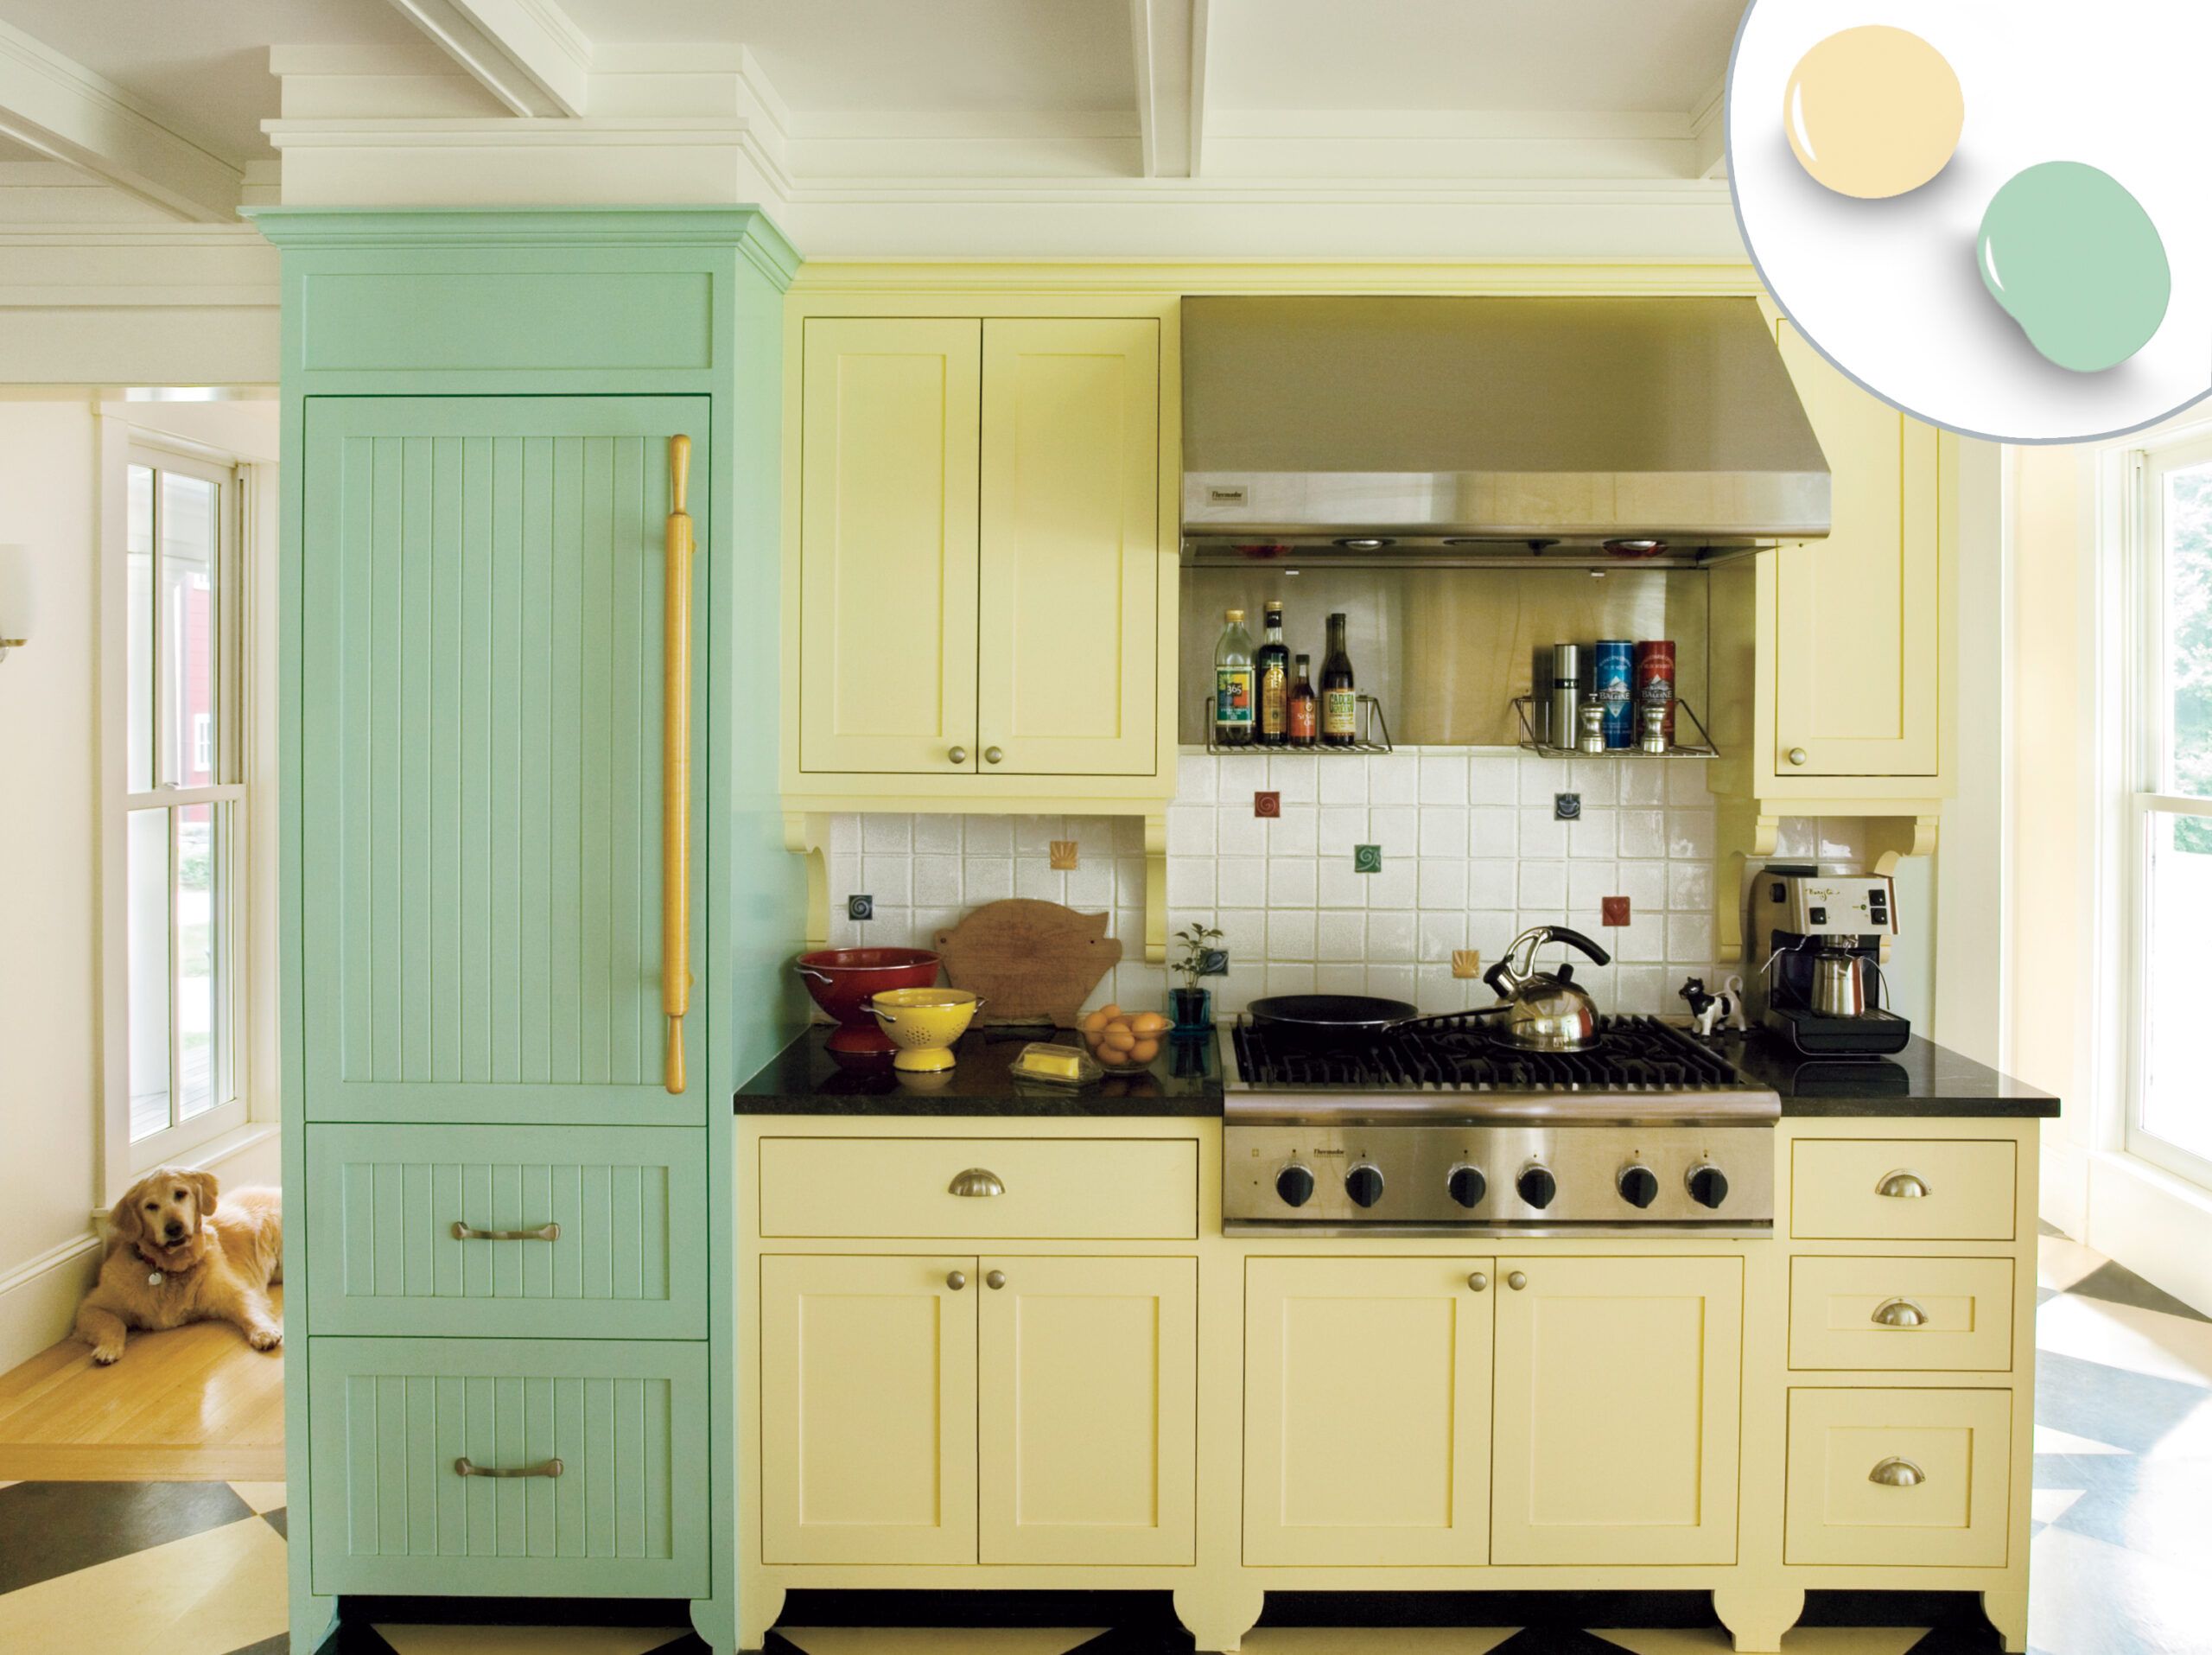 Colorful Kitchen Ideas: 13 Designer Ways To Brighten A Kitchen